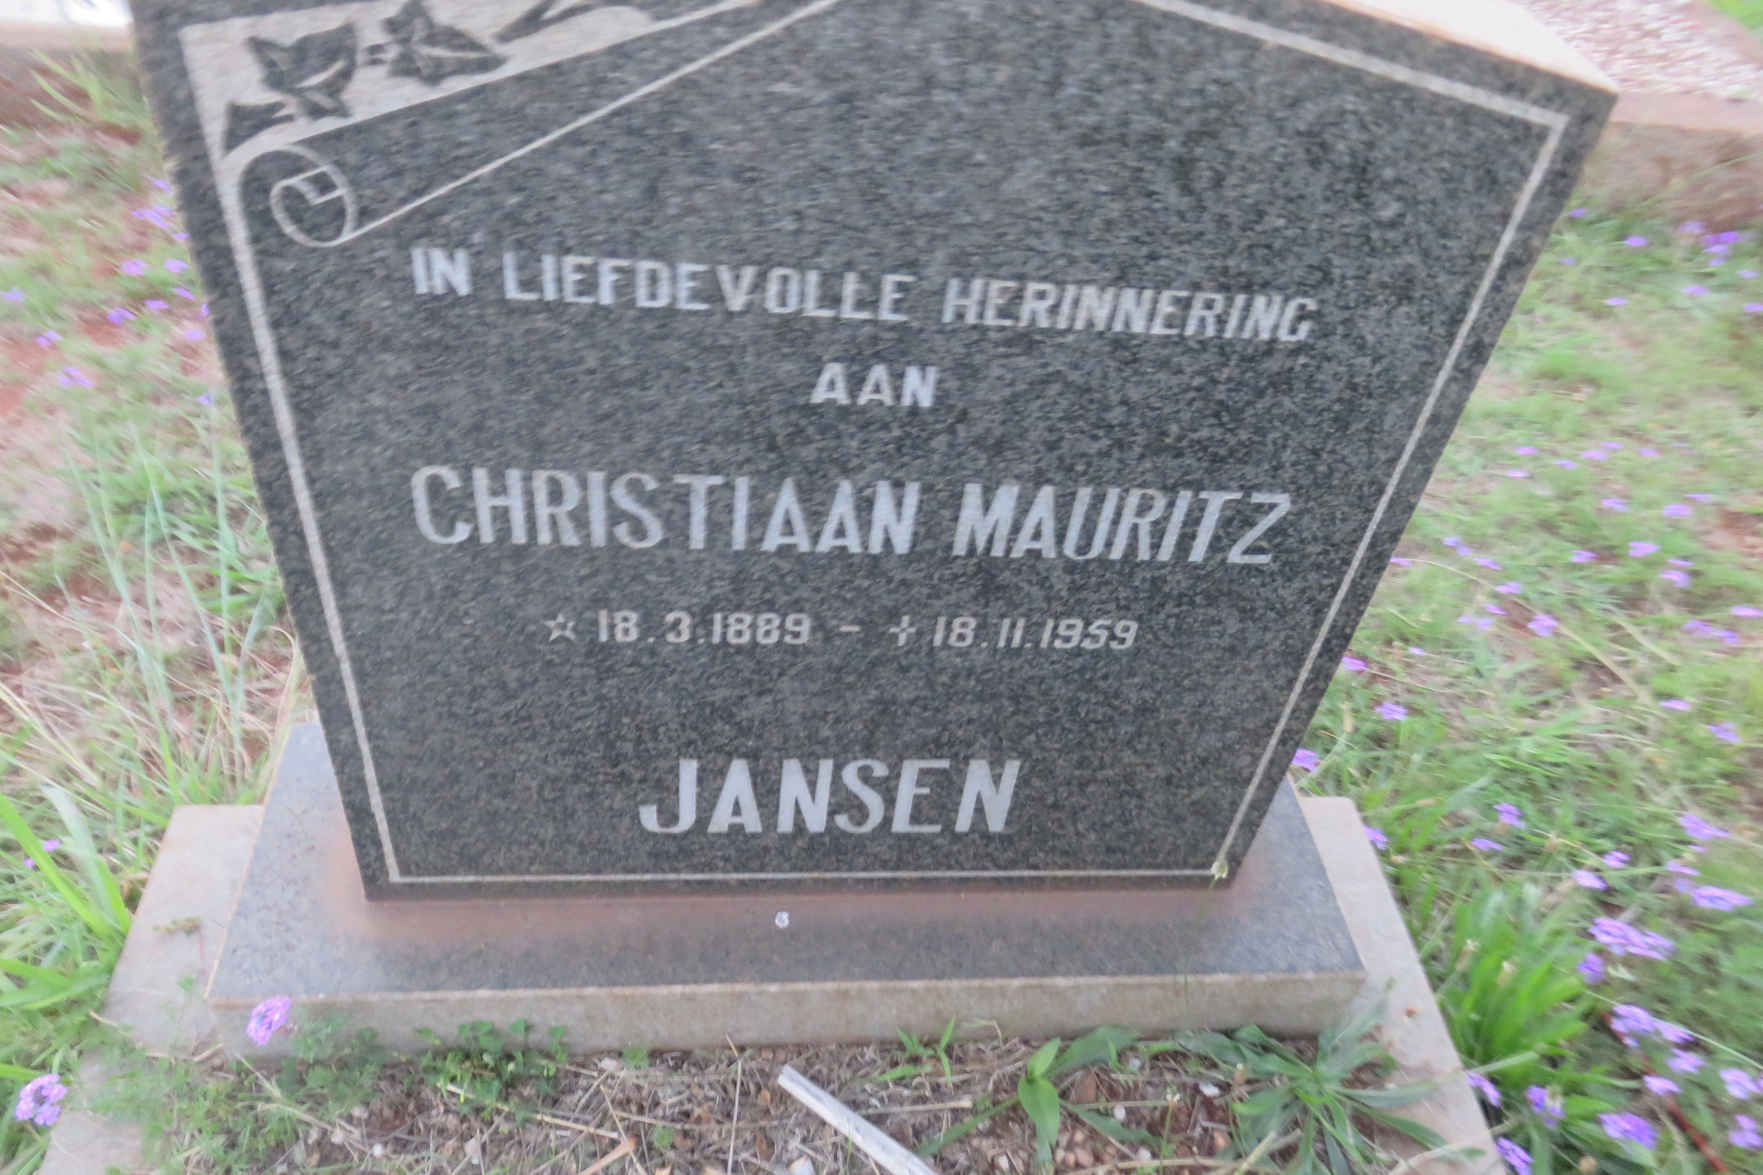 JANSEN Christiaan Mauritz 1889-1959